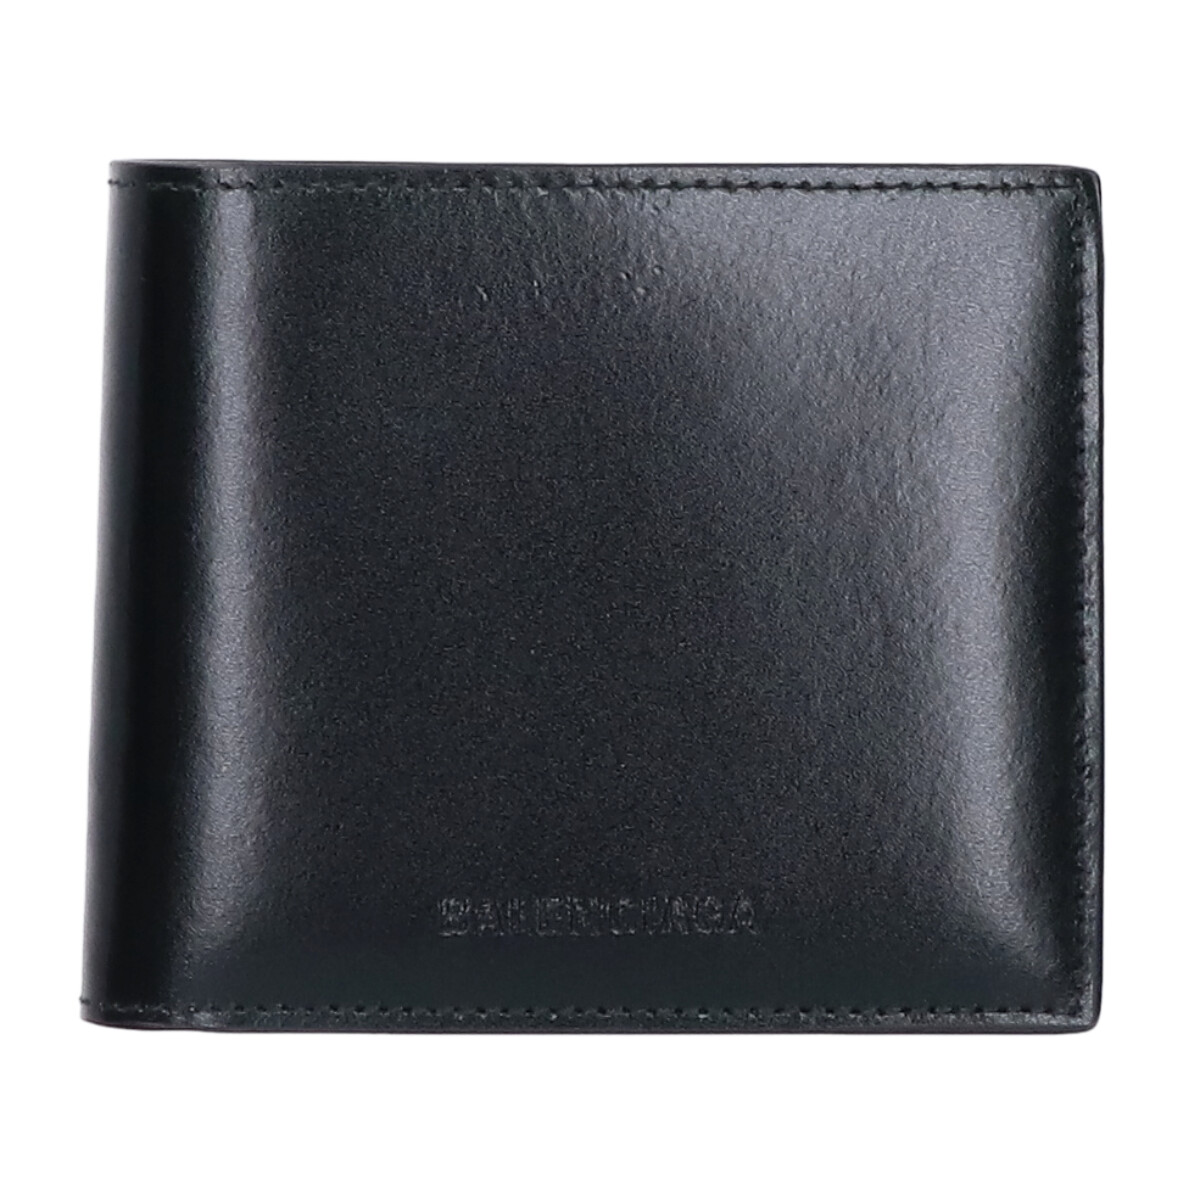 バレンシアガの664038 ブラック レザー 2つ折り財布の買取実績です。